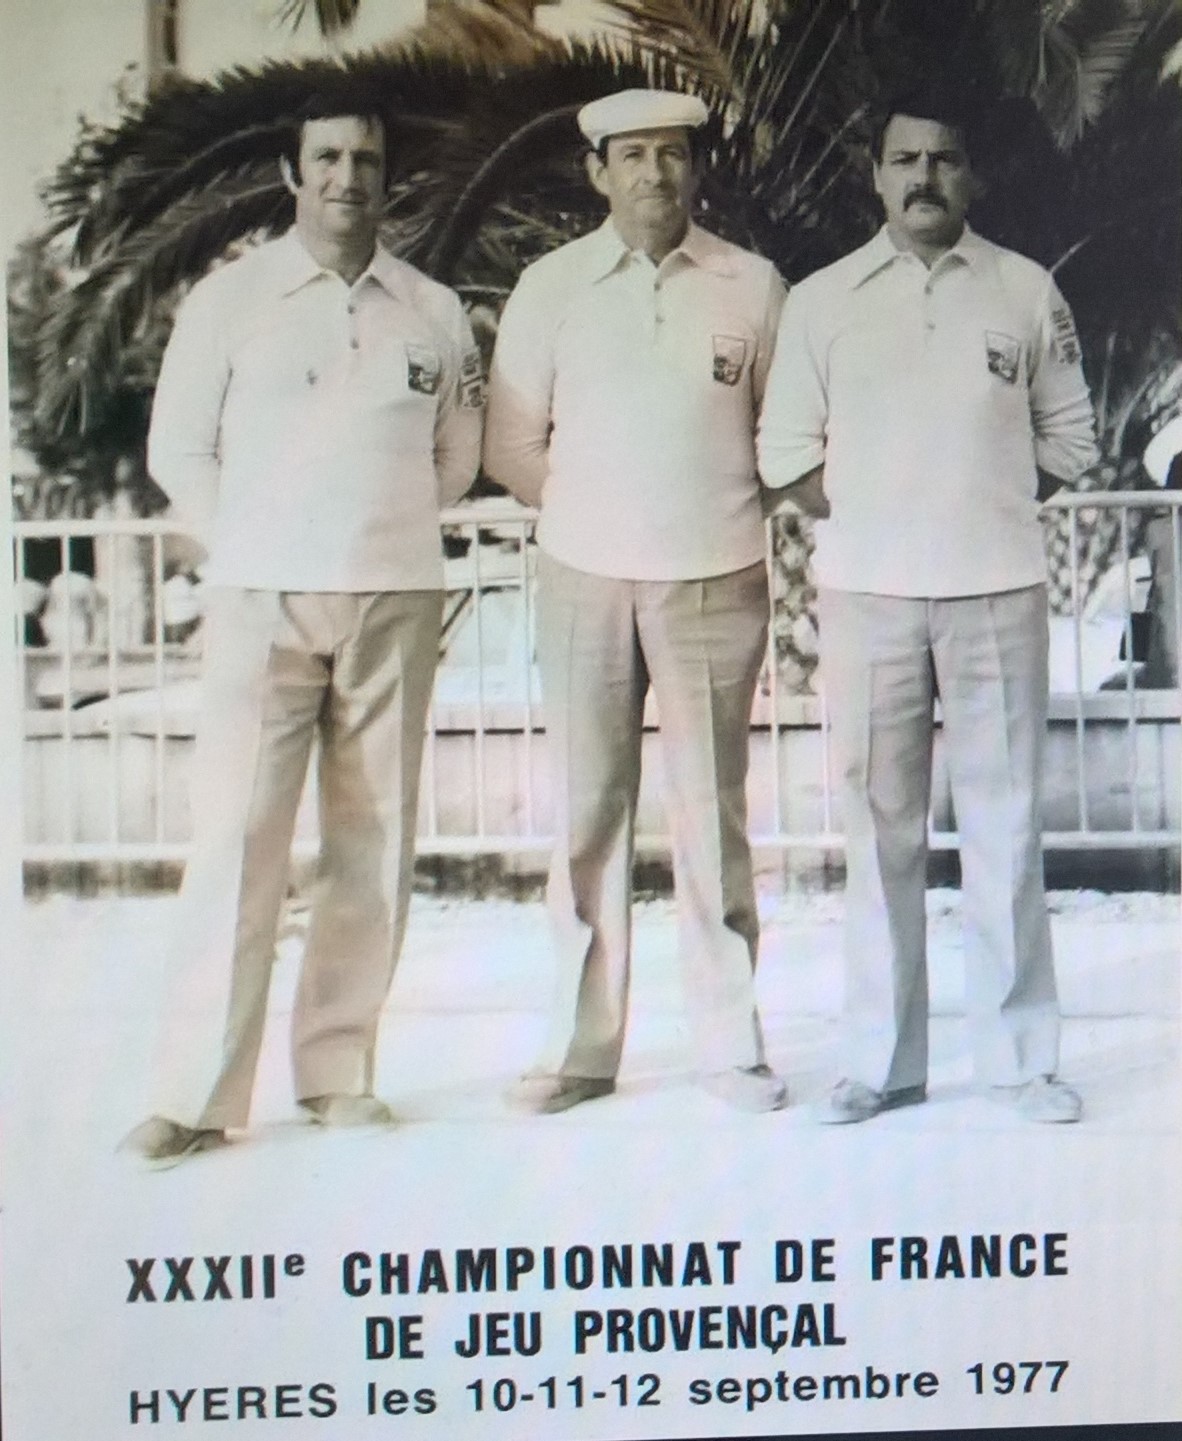 Vincent SOLER François SOLER Roger GUIOT, la classique des Seventies ici au Championnat de France 1977 à Hyères.